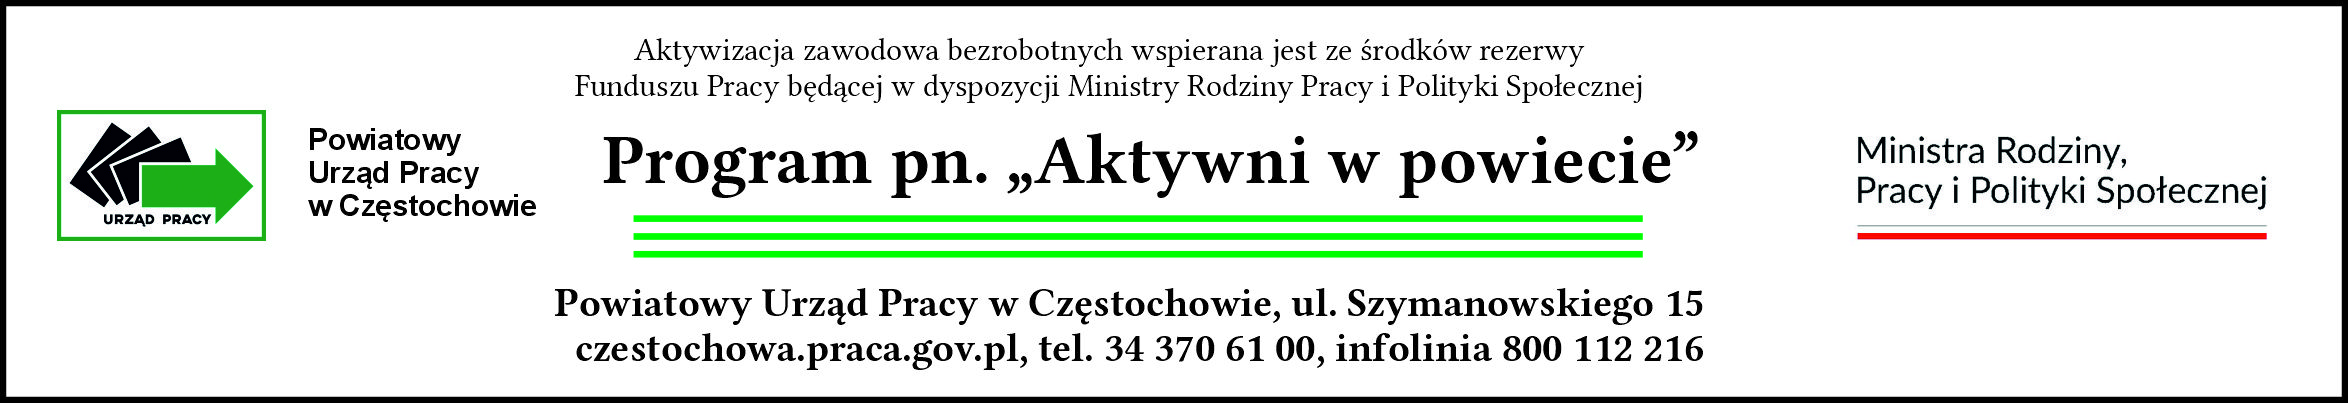 Logo Programu Aktywni w powiecie